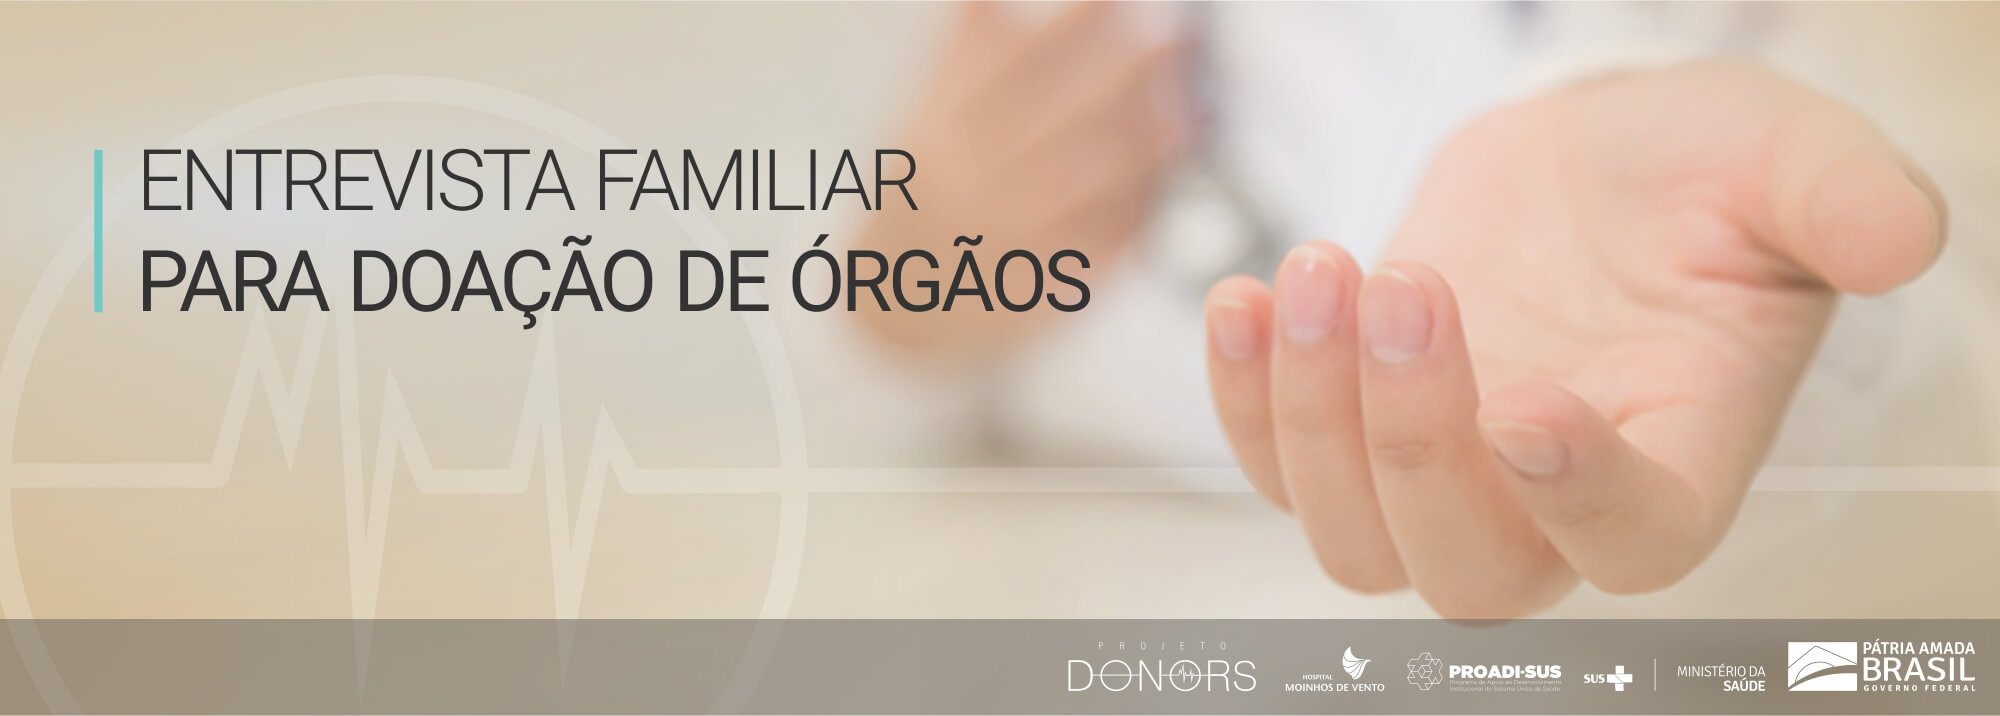 Entrevista Familiar para Doação de Órgãos Projeto DONORS